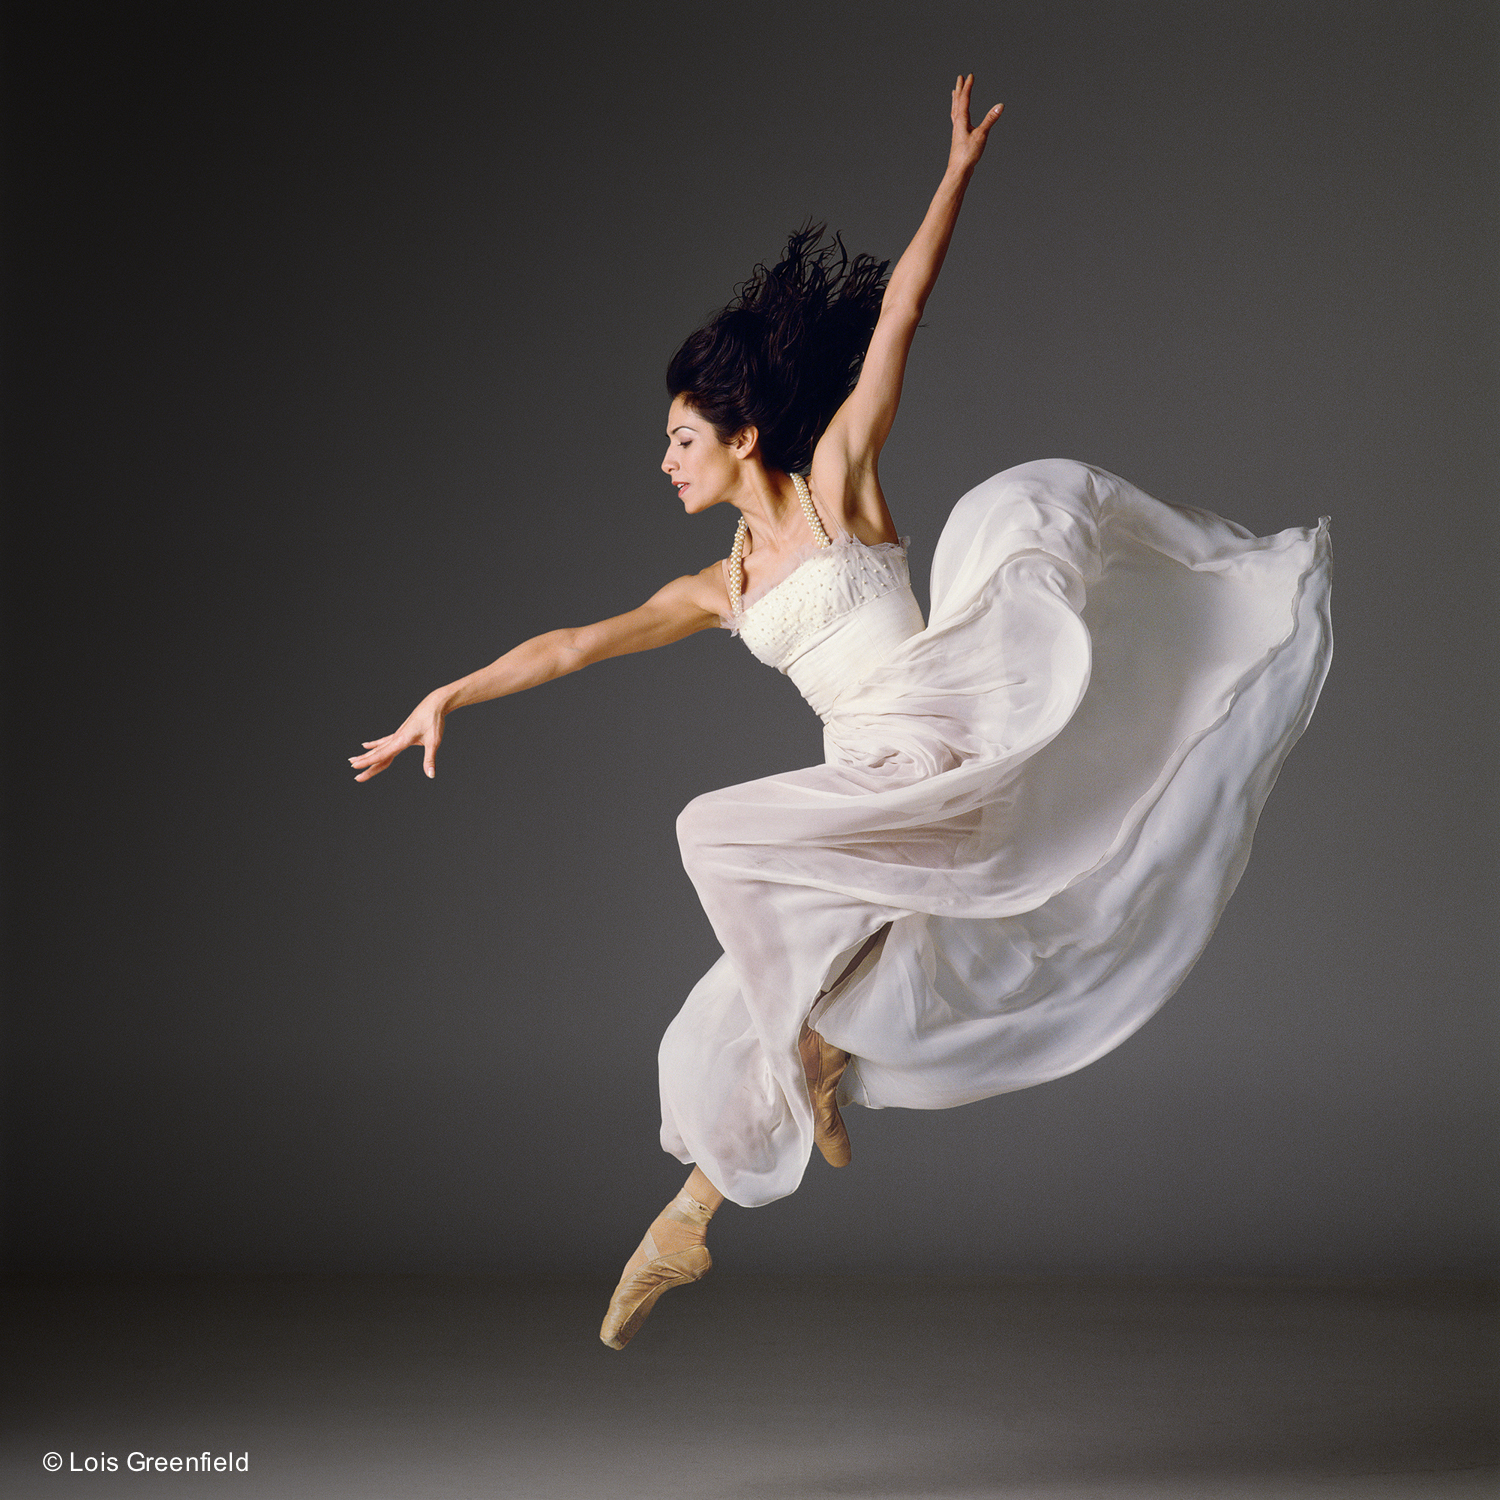 Песня летающего танца. Лоис Гринфилд. Lois Greenfield фотограф. Танец в полете. Пластика танцы.